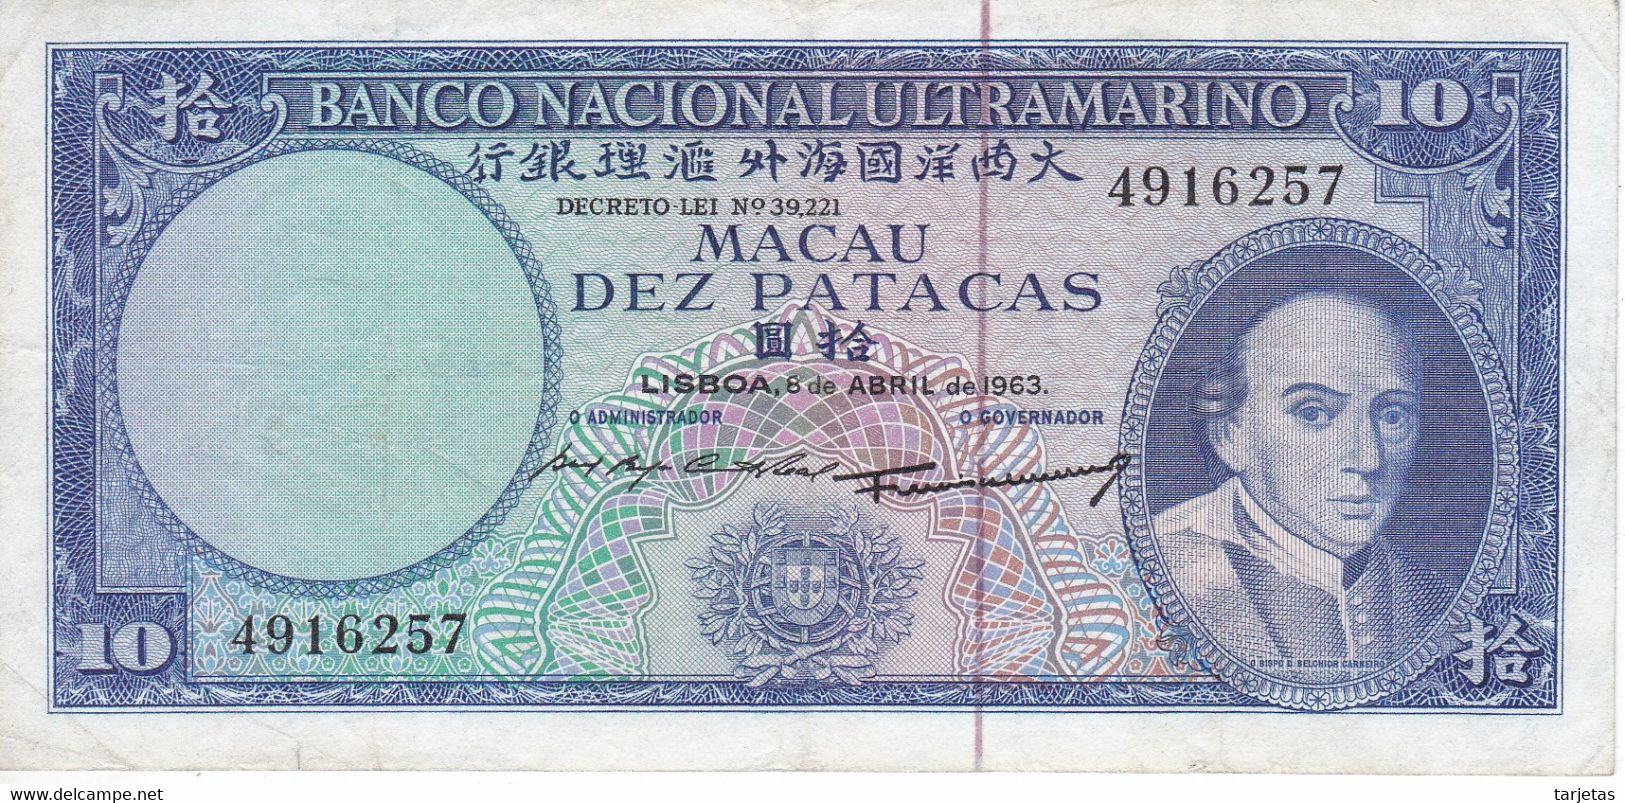 BILLETE DE MACAO DE 10 PATACAS DEL AÑO 1963  (BANKNOTE) - Macau